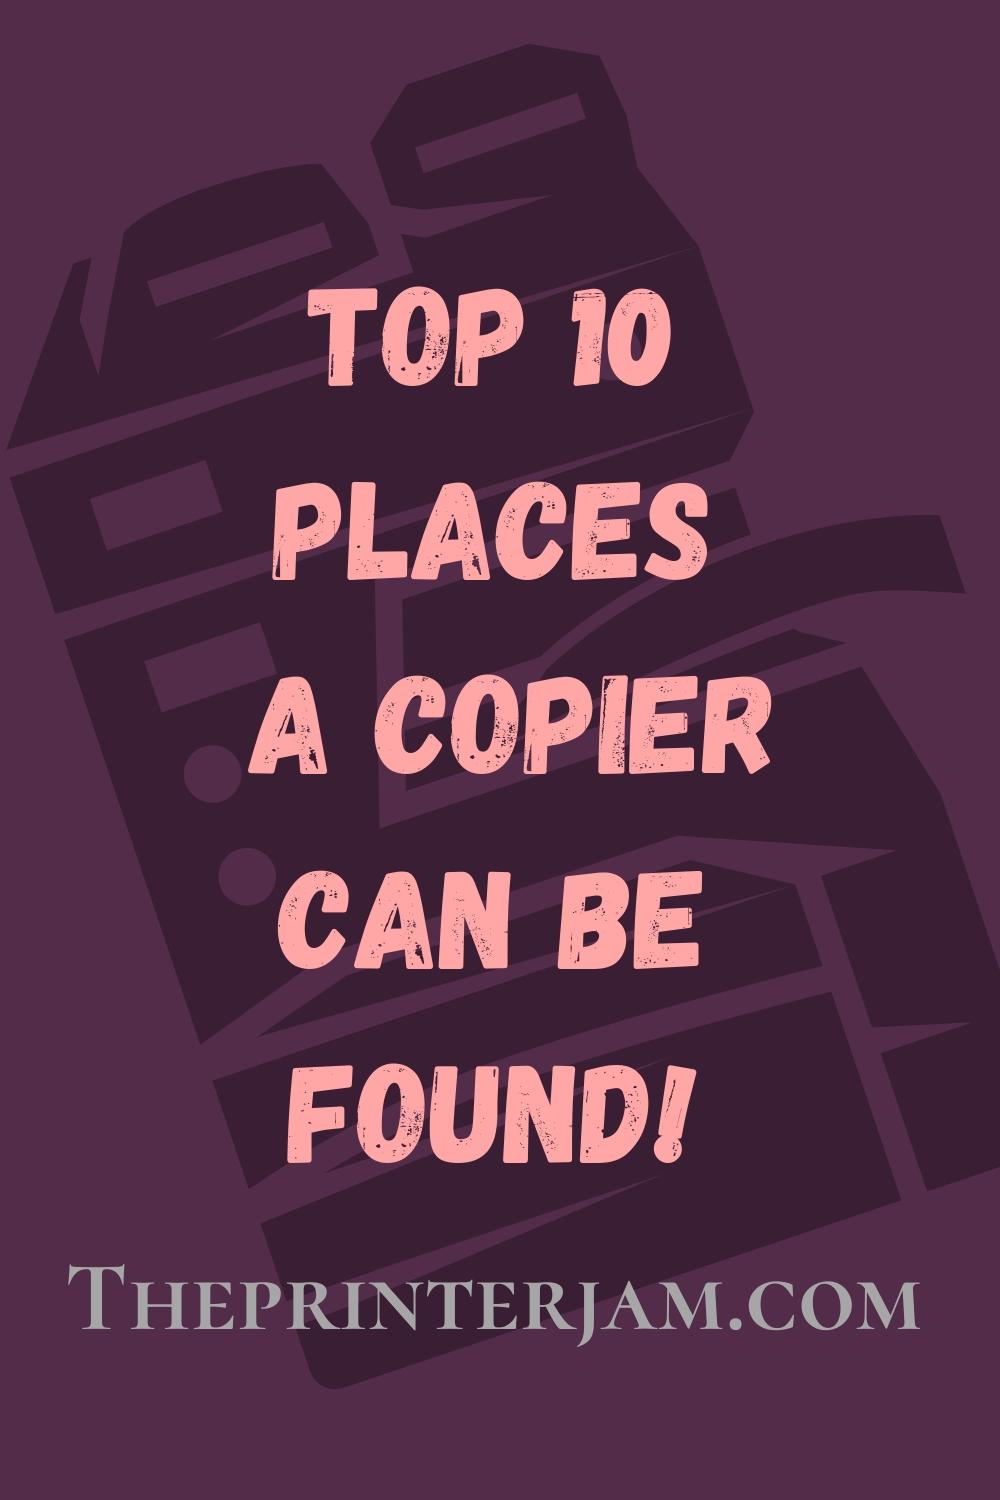 copier found